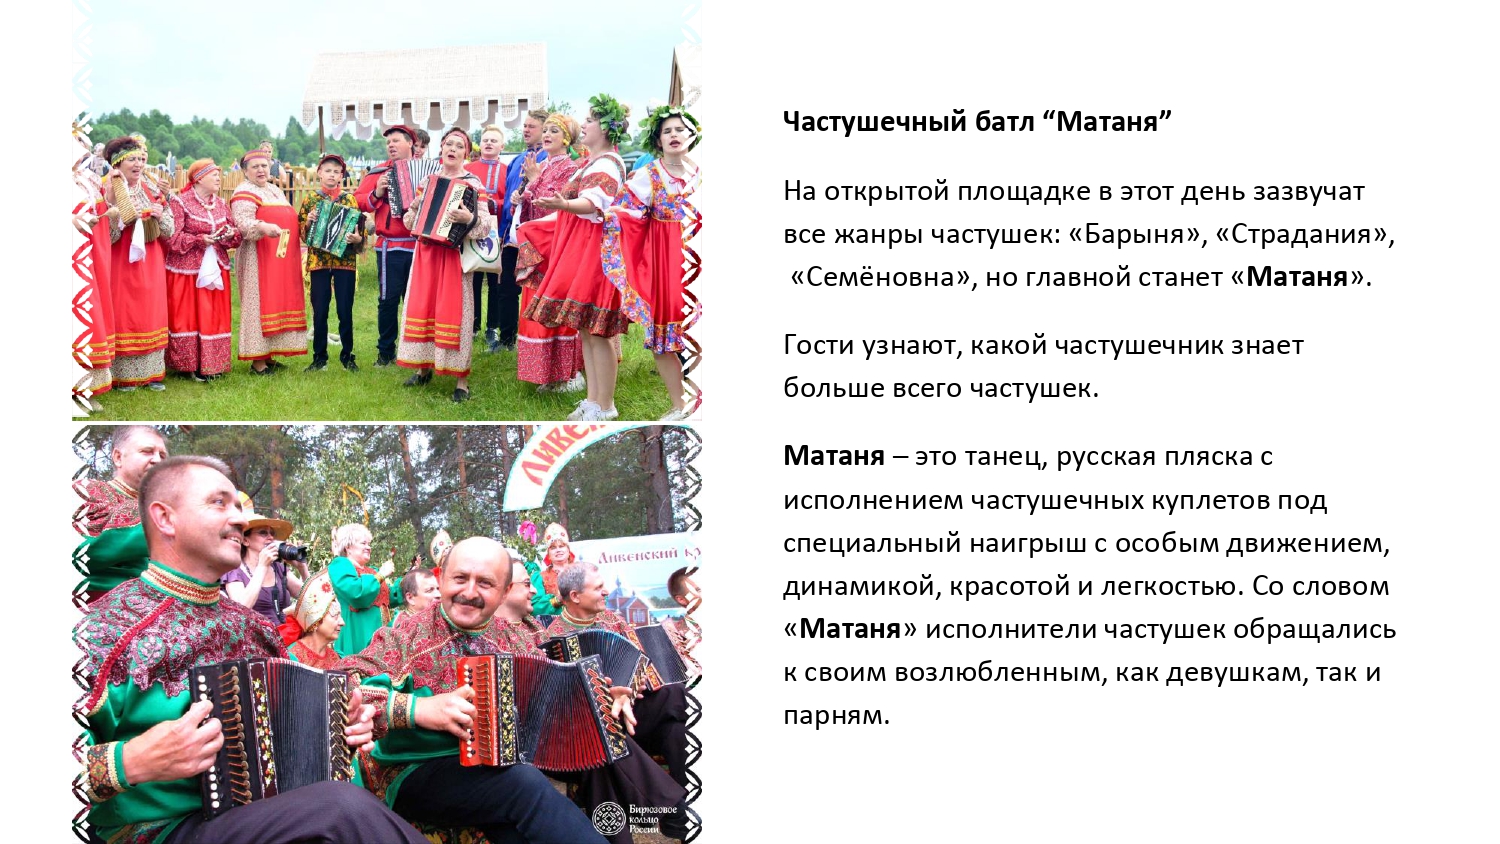 Фестиваль-променад "Бирюза" в городе Ливны